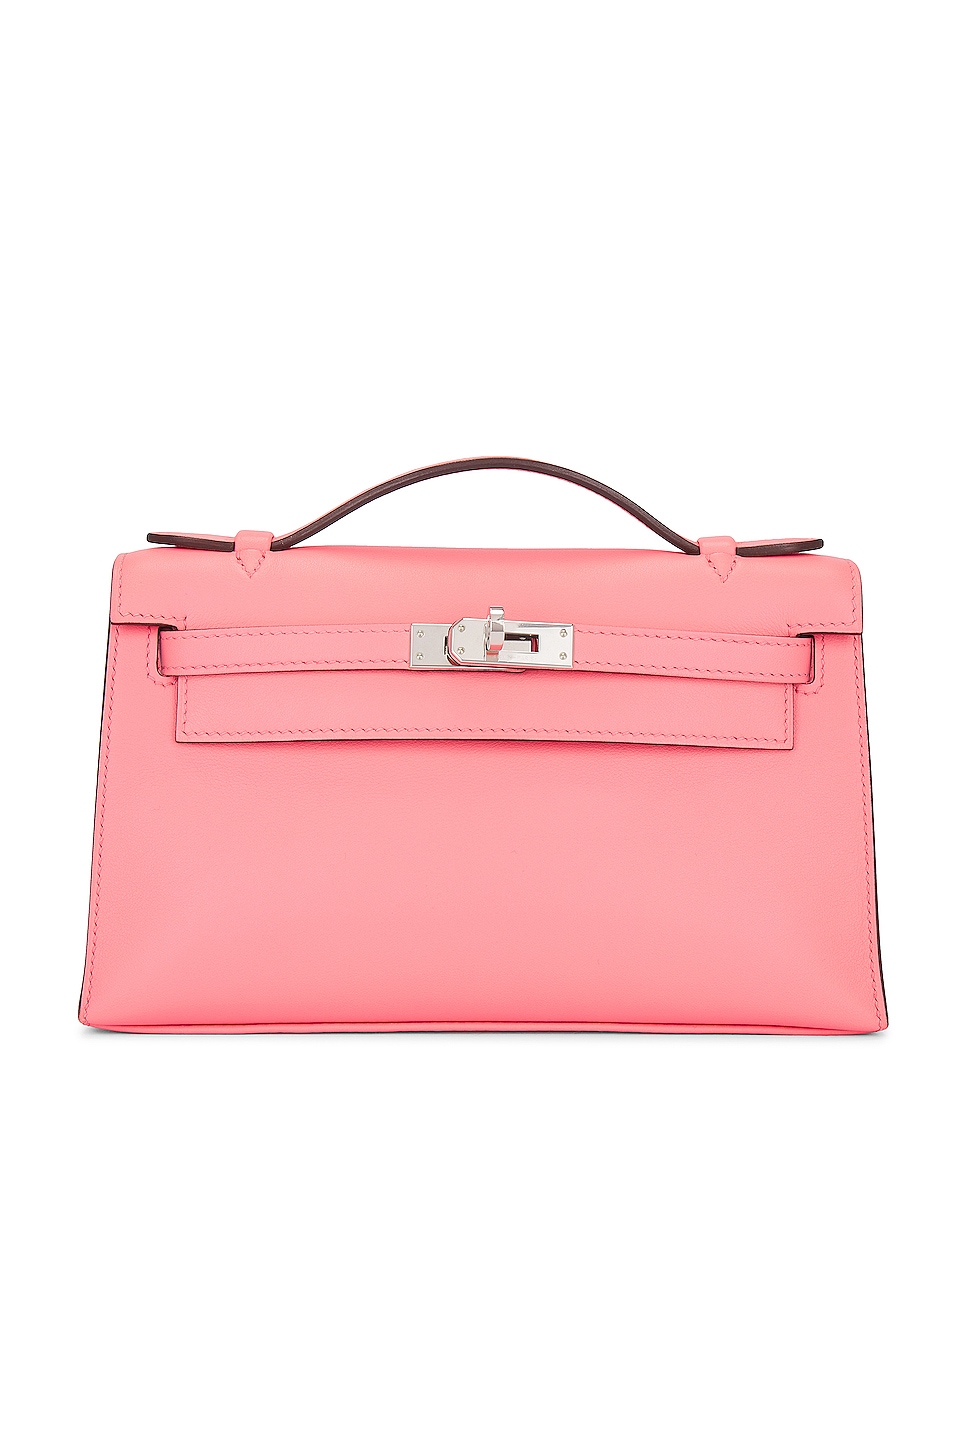 FWRD Renew Hermes Kelly Pochette Handbag in Rose Swift